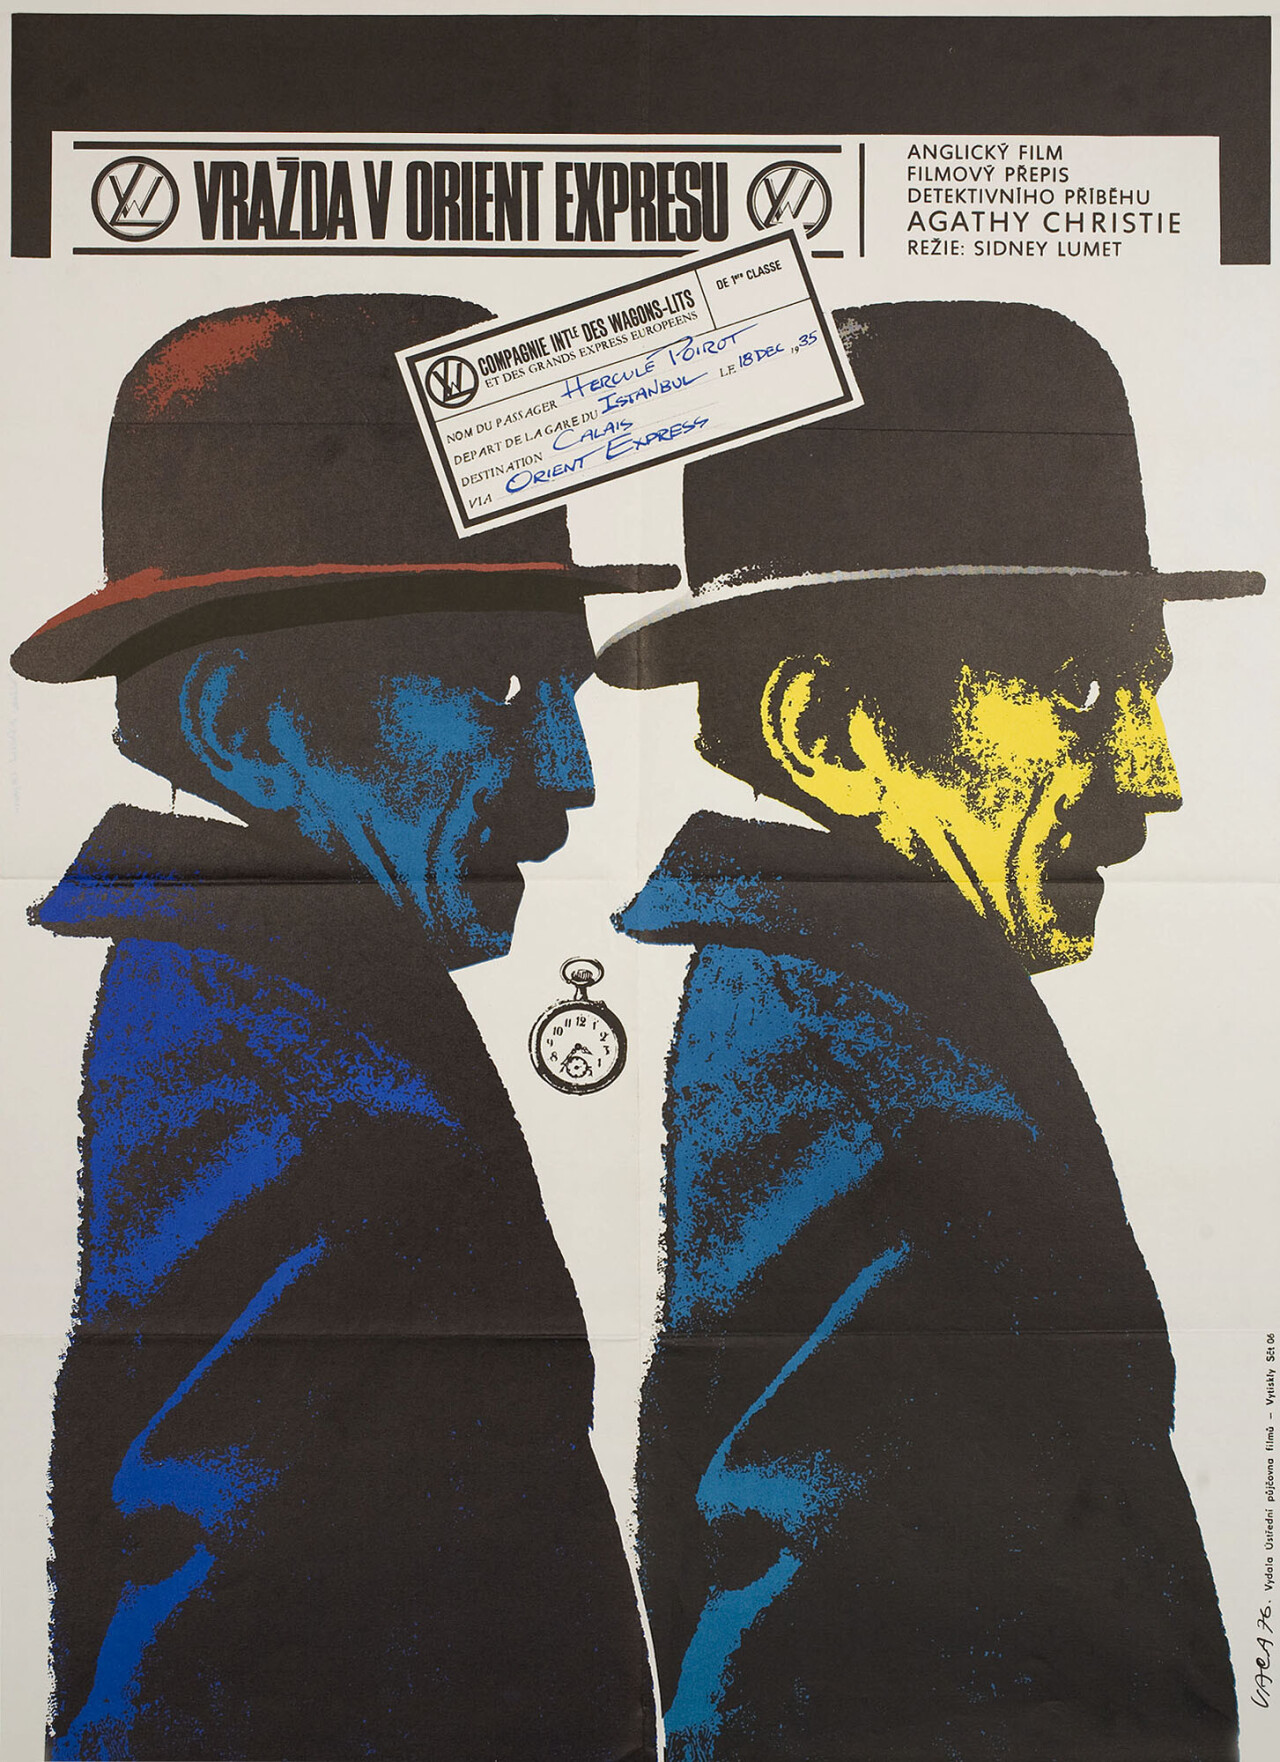 Убийство в Восточном экспрессе (Murder on the Orient Express, 1974), режиссёр Сидни Люмет, чехословацкий постер к фильму, автор Карел Вака (графический дизайн, 1976 год)